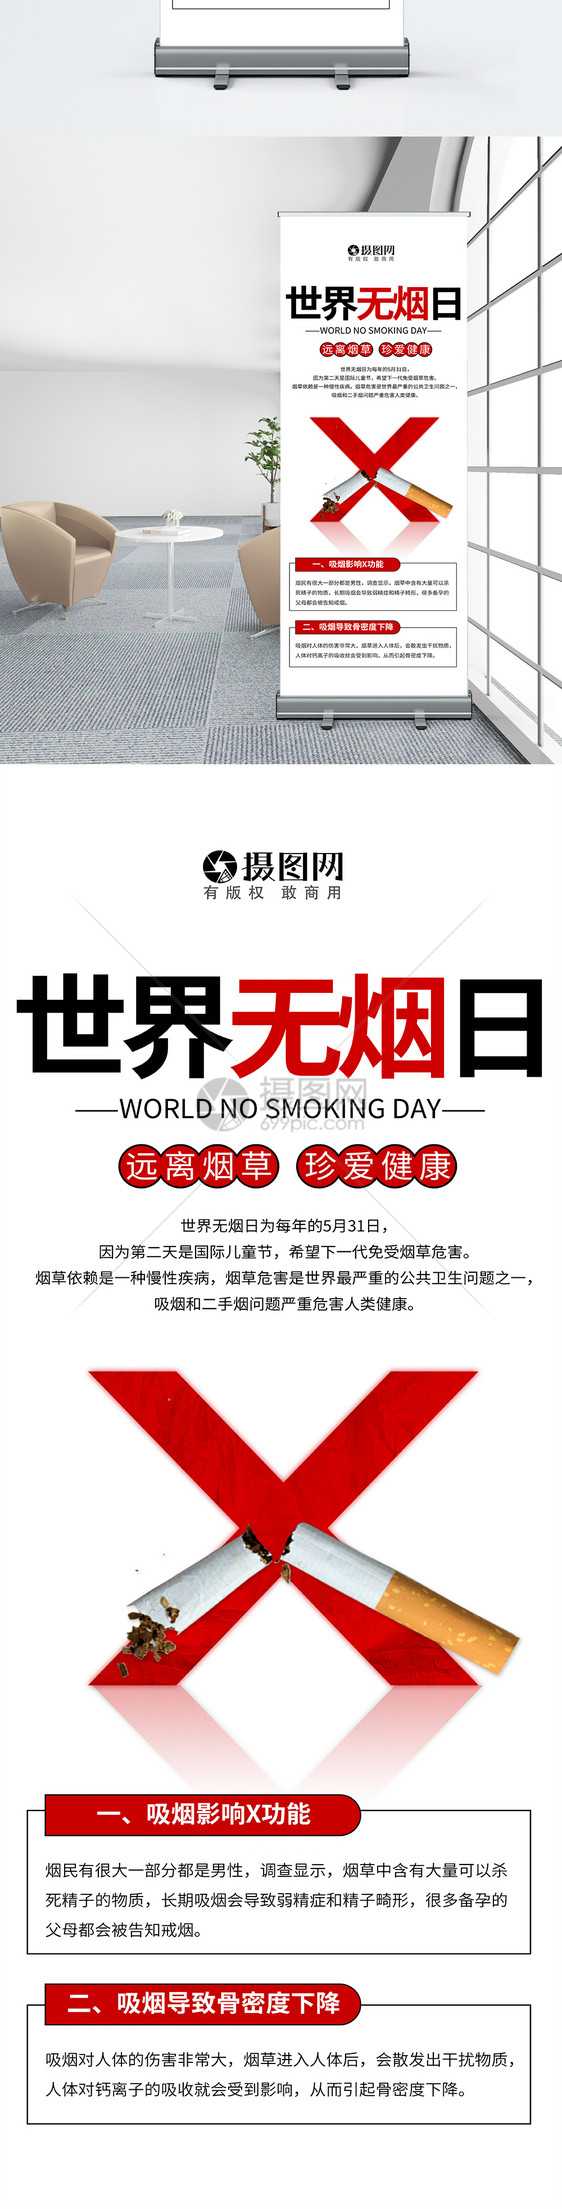 世界无烟日请勿吸烟宣传展架图片